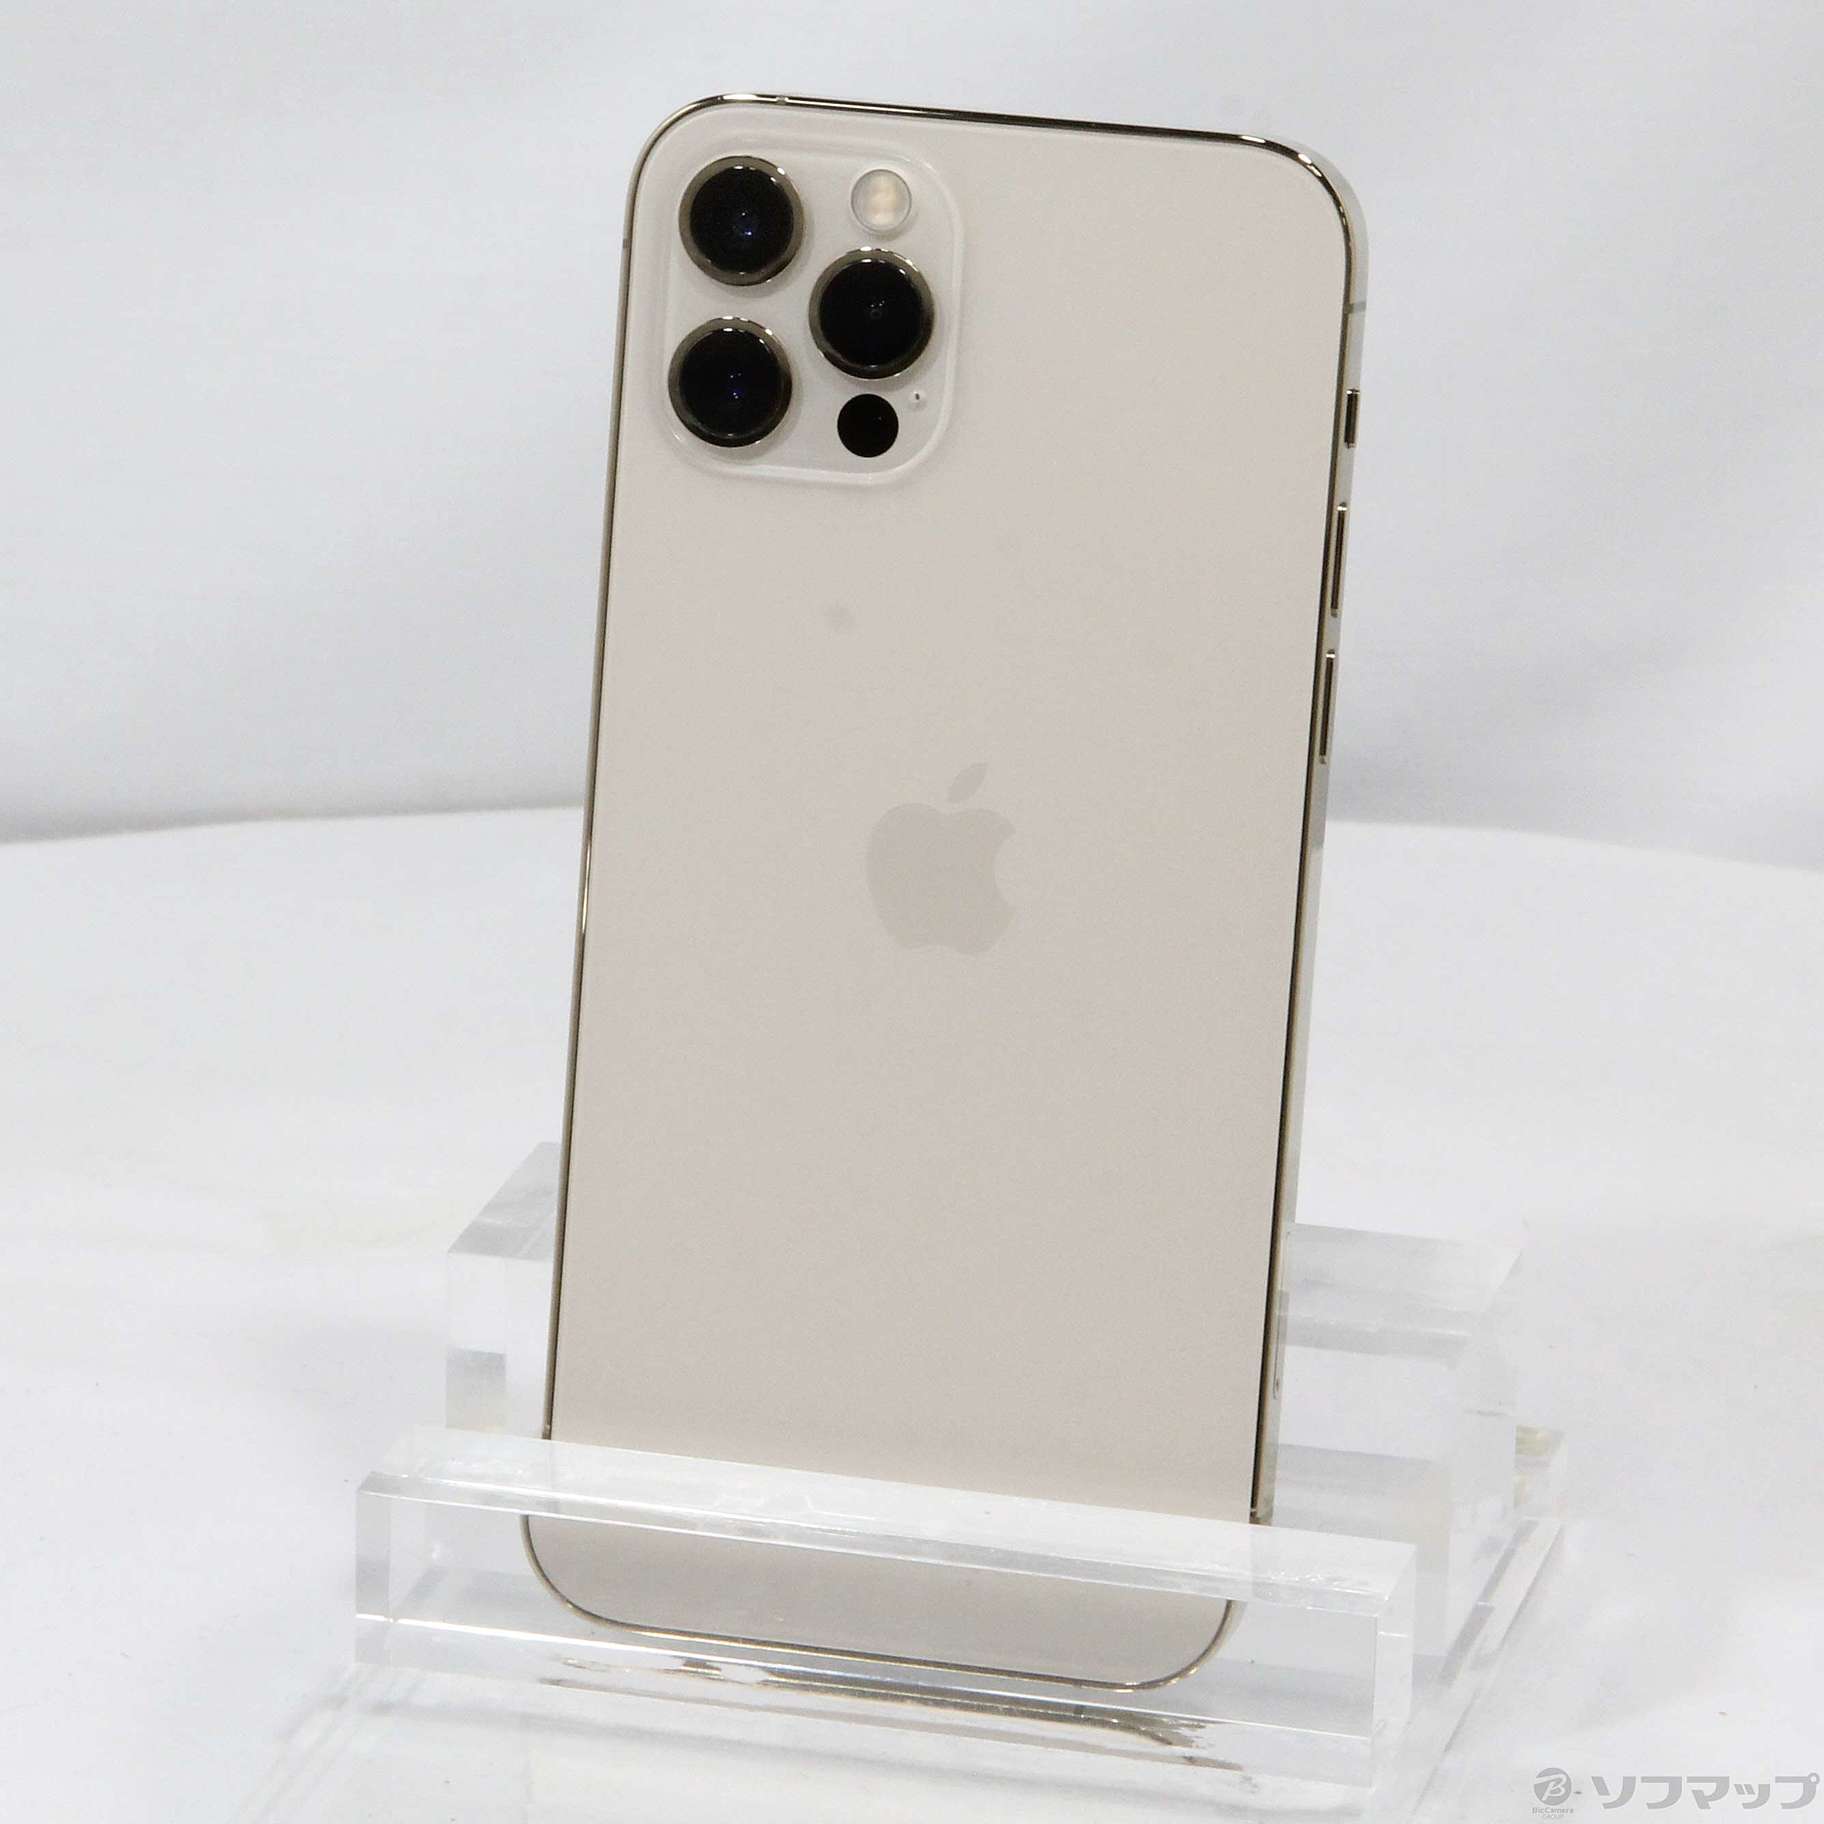 【Apple】 iPhone 12 Pro 256GB ゴールド SIMフリー